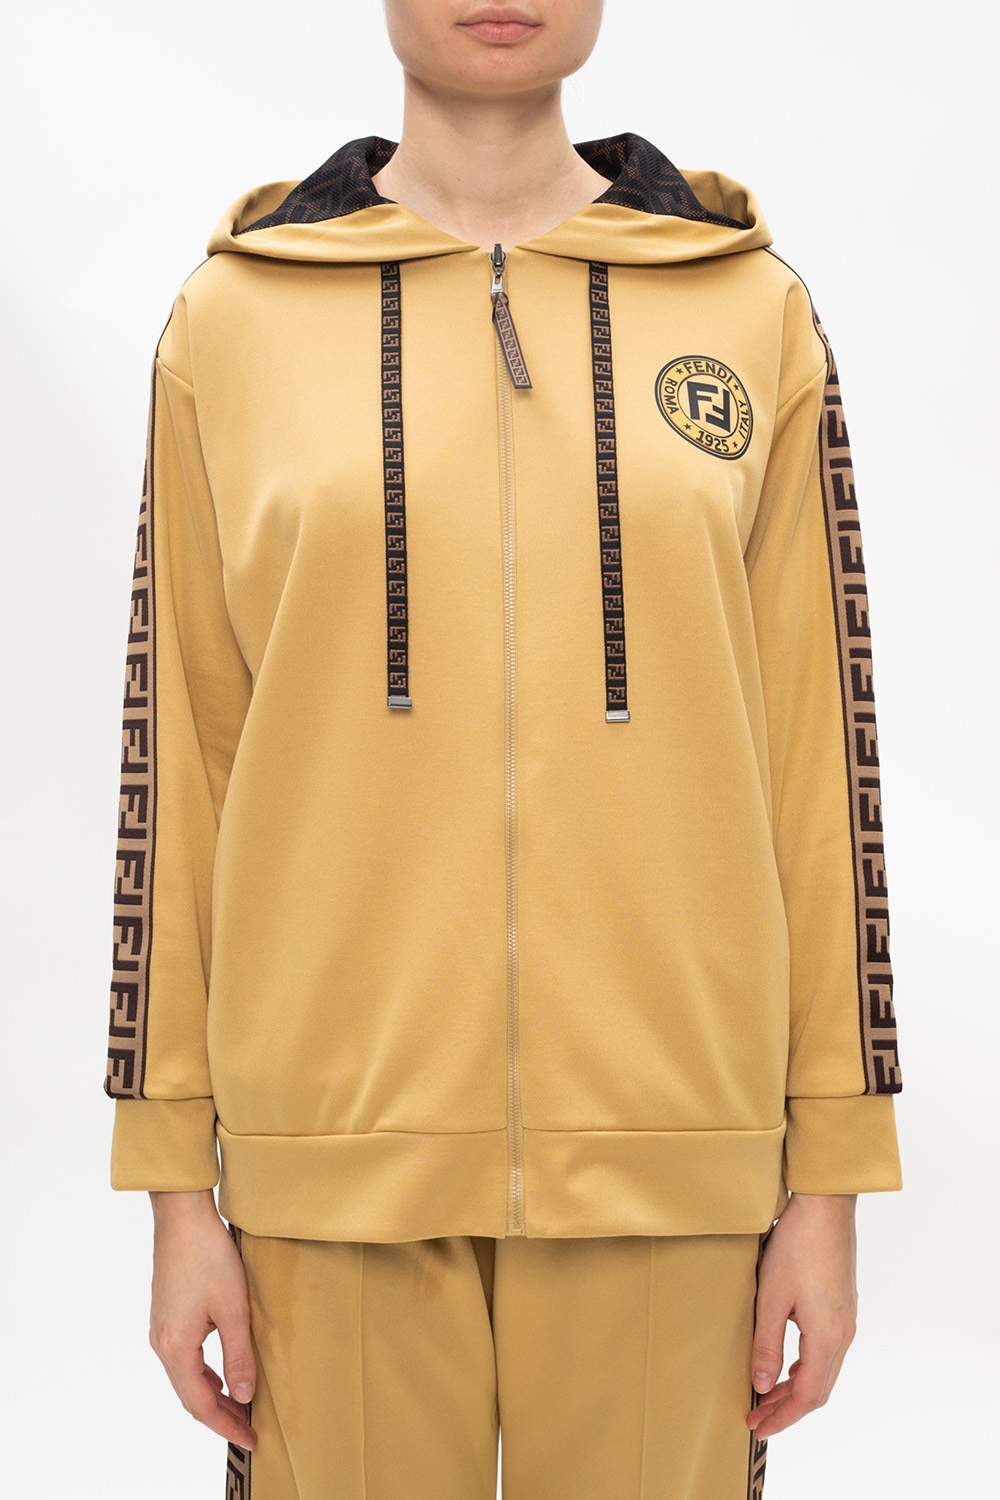 Printed hoodie Fendi - Vitkac HK